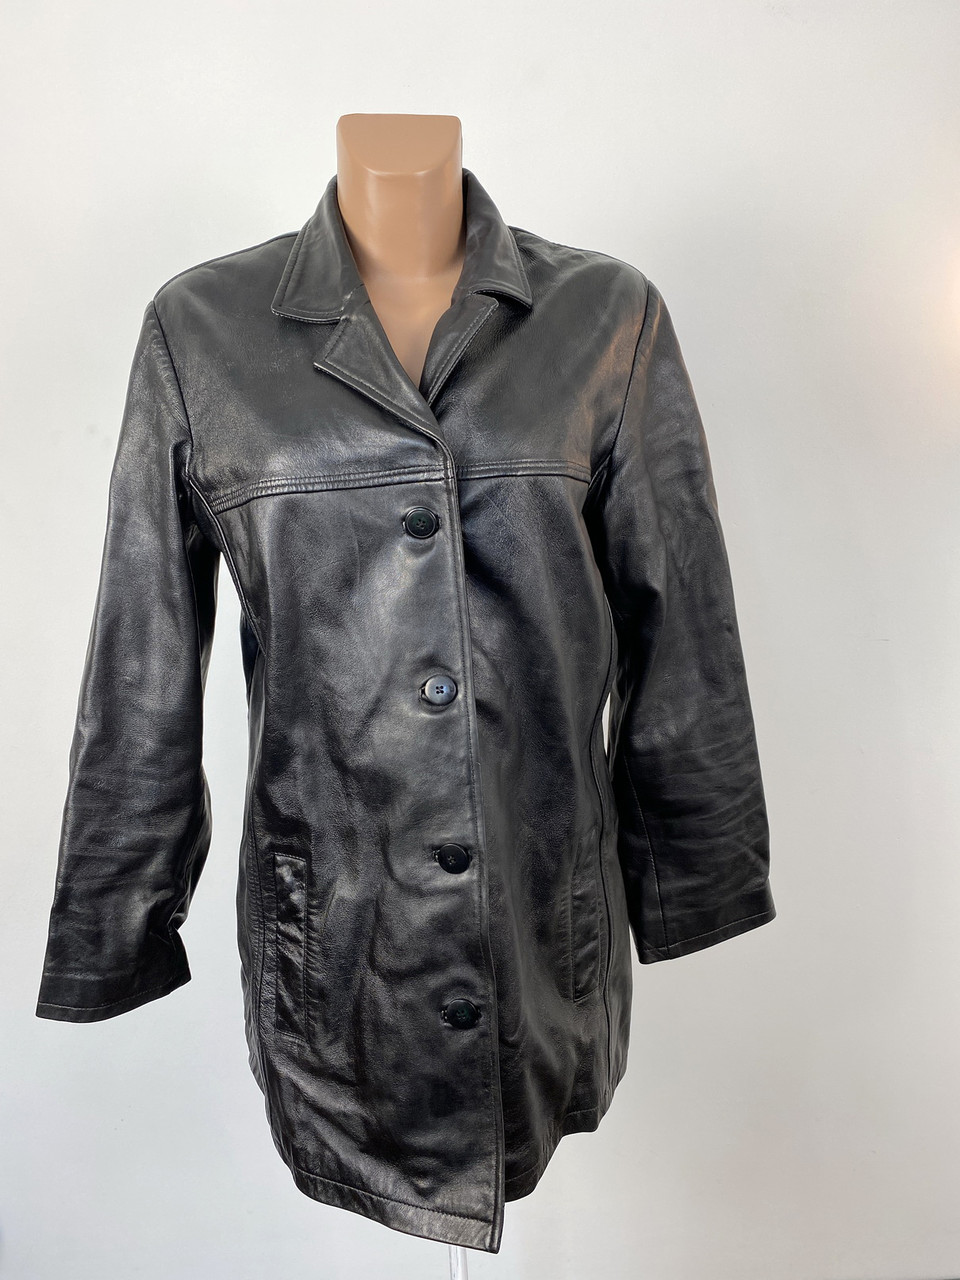 Куртка кожаная стильная Skinz Leather wear, Разм 16 (L), Отл сост